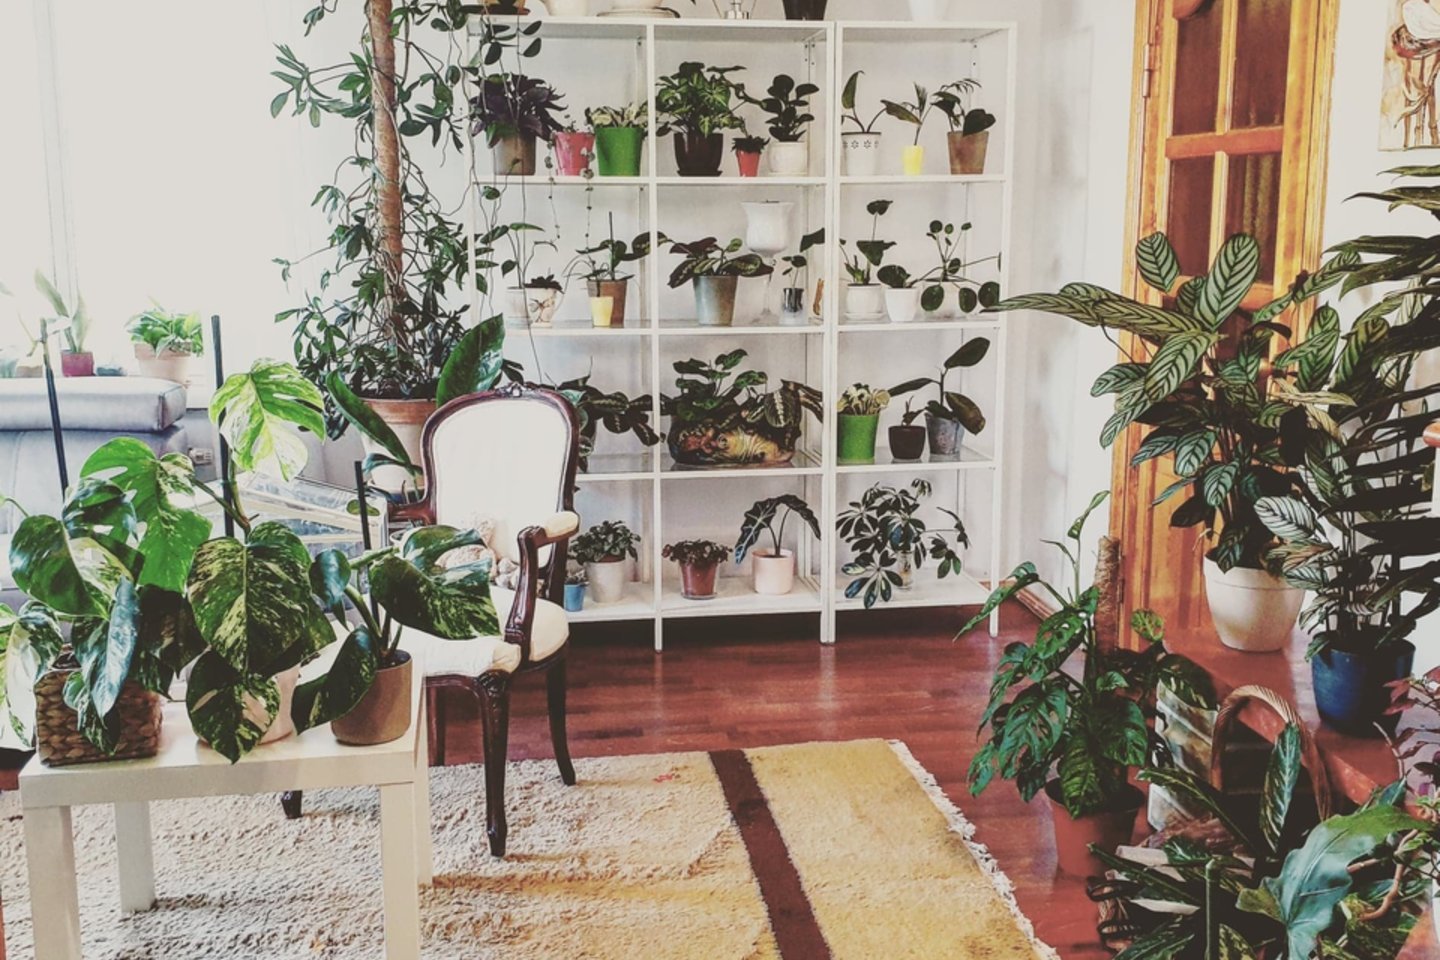  Augalų kambarys šeimos namuose Alytuje.<br> Asmeninio archyvo nuotr.